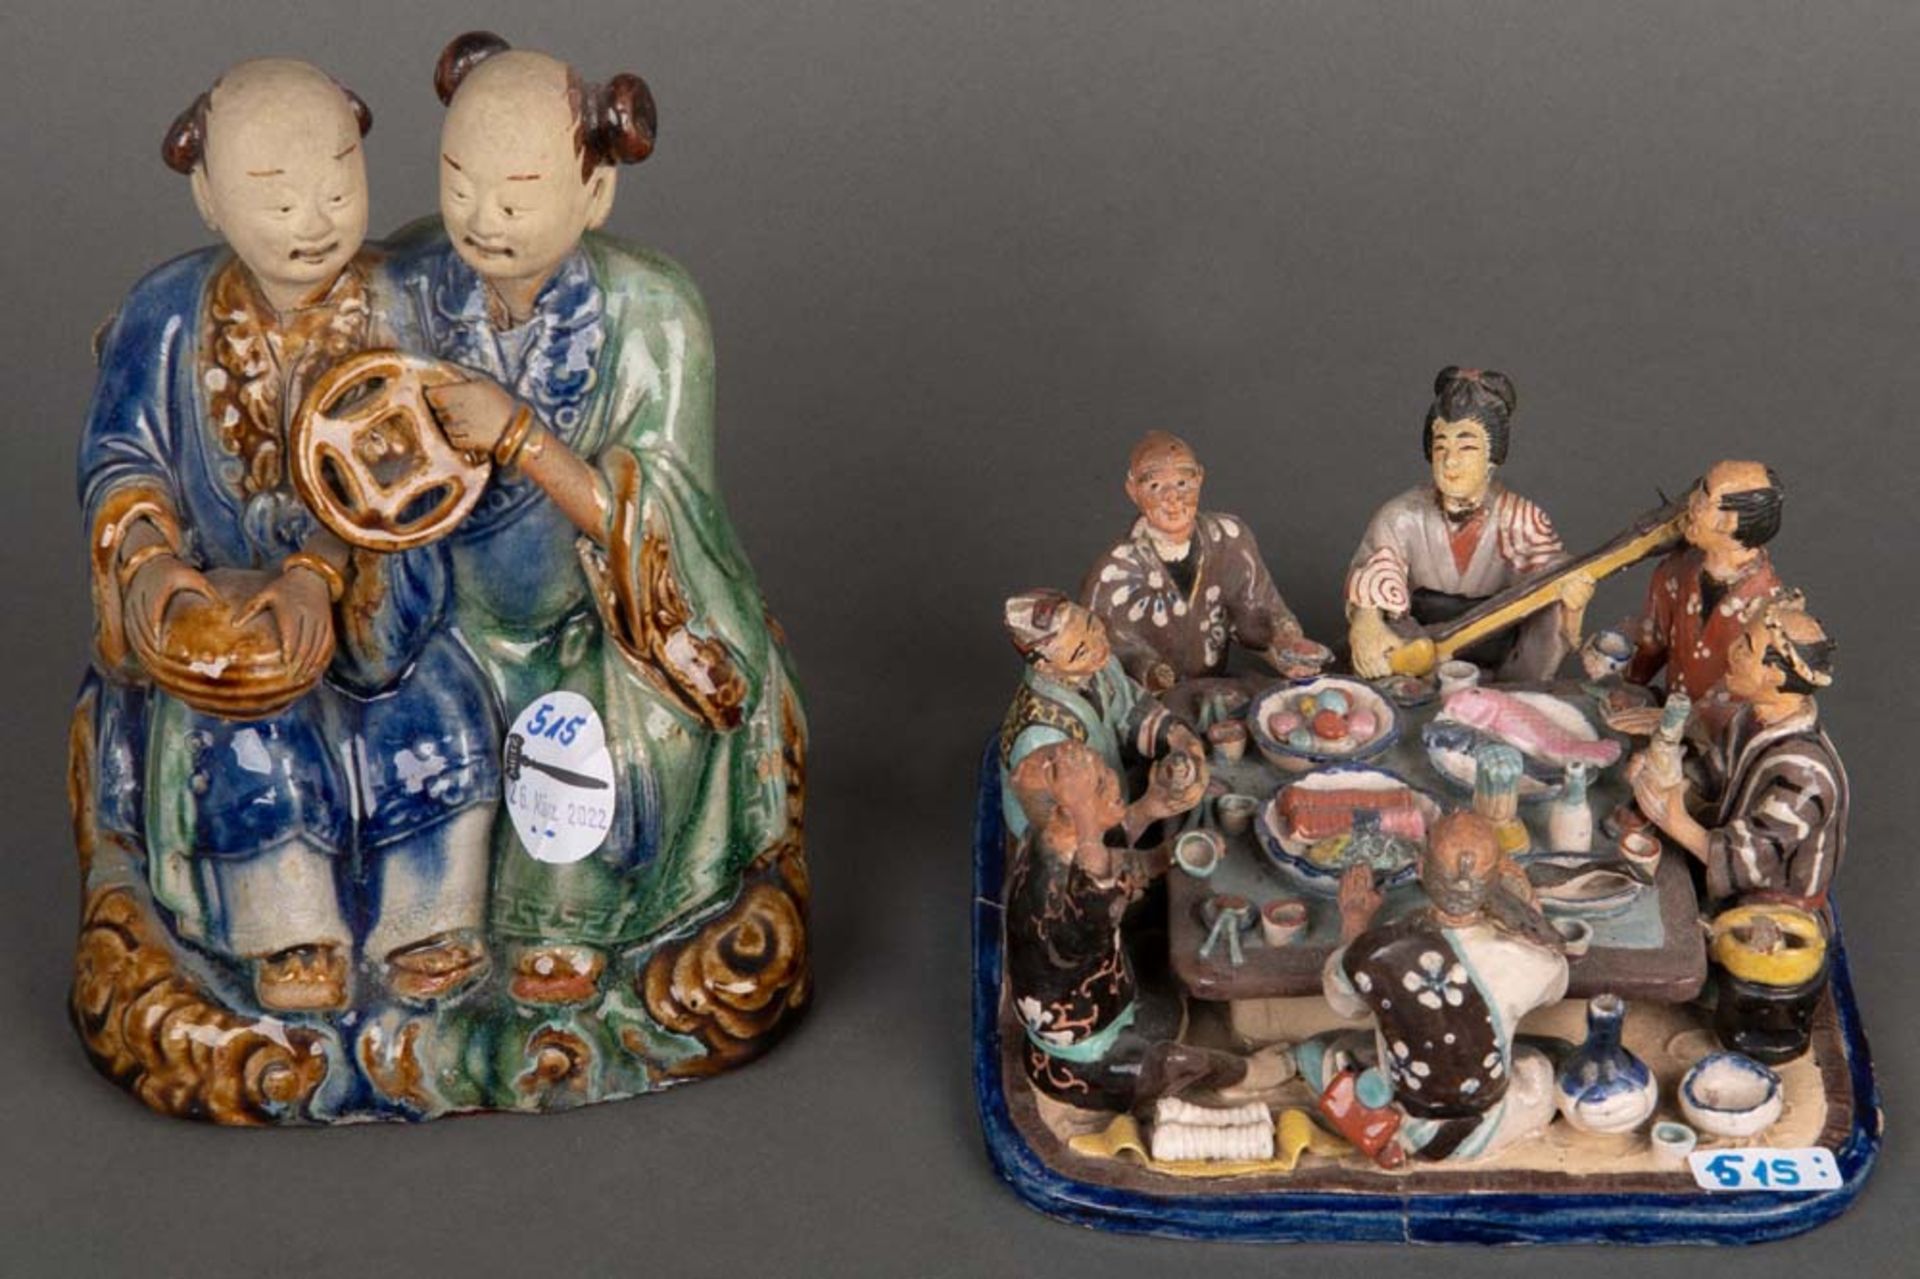 Tischgesellschaft und Figurenpaar. Asien. Keramik, bunt bemalt, H=8 / 18 cm. (besch.)